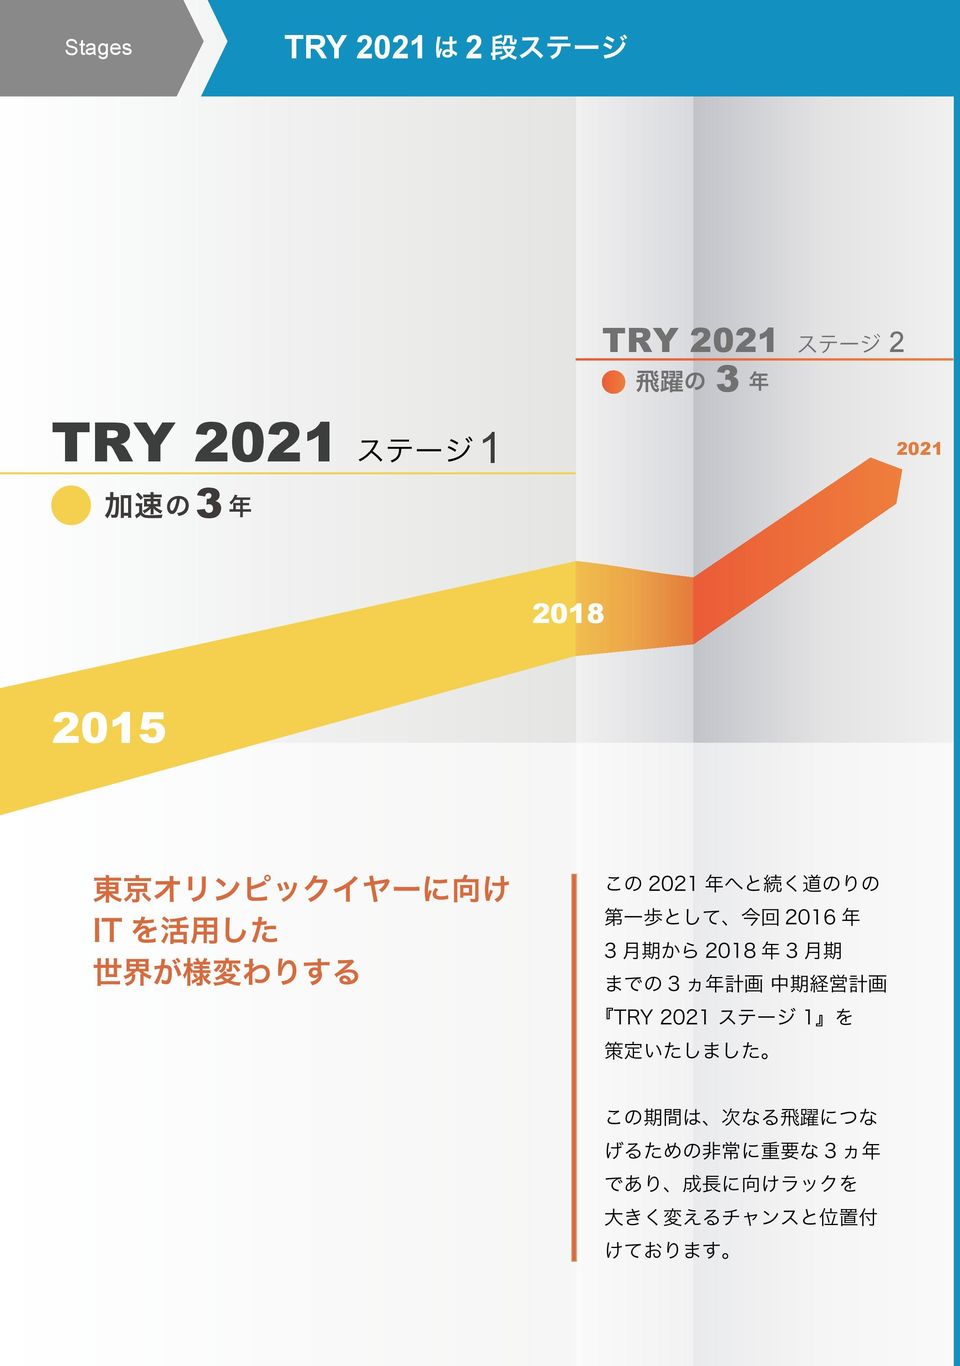 として 今 回 2016 年 3 月 期 から 2018 年 3 月 期 までの 3 ヵ 年 計 画 中 期 経 営 計 画 TRY 2021 ステージ 1 を 策 定